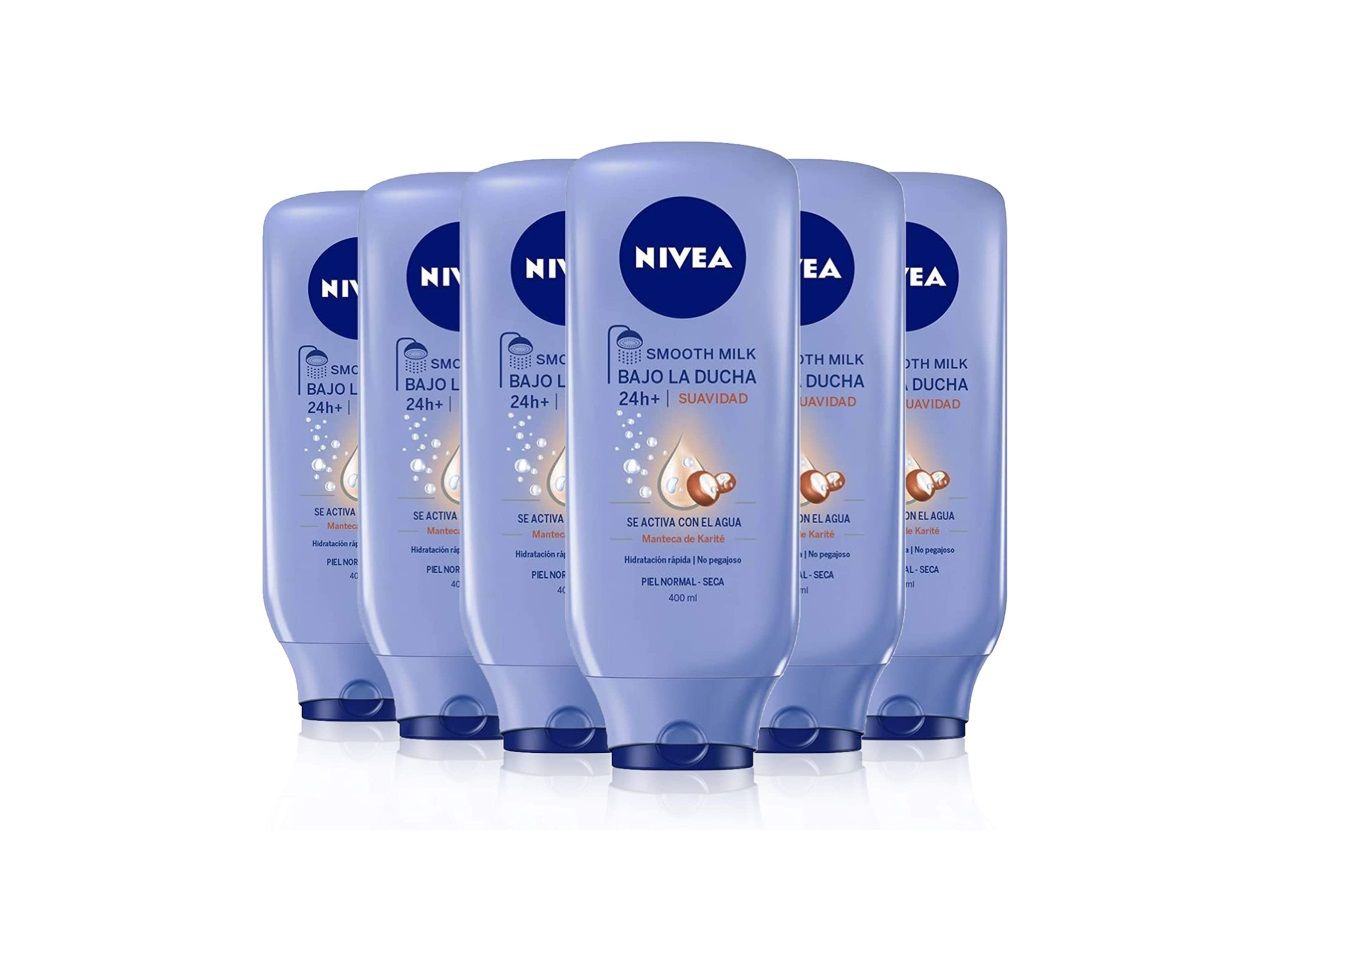 ¡Chollo! Pack de 6 envases de Nivea bajo la ducha Smooth Milk por sólo 17,46€ (antes 28€)